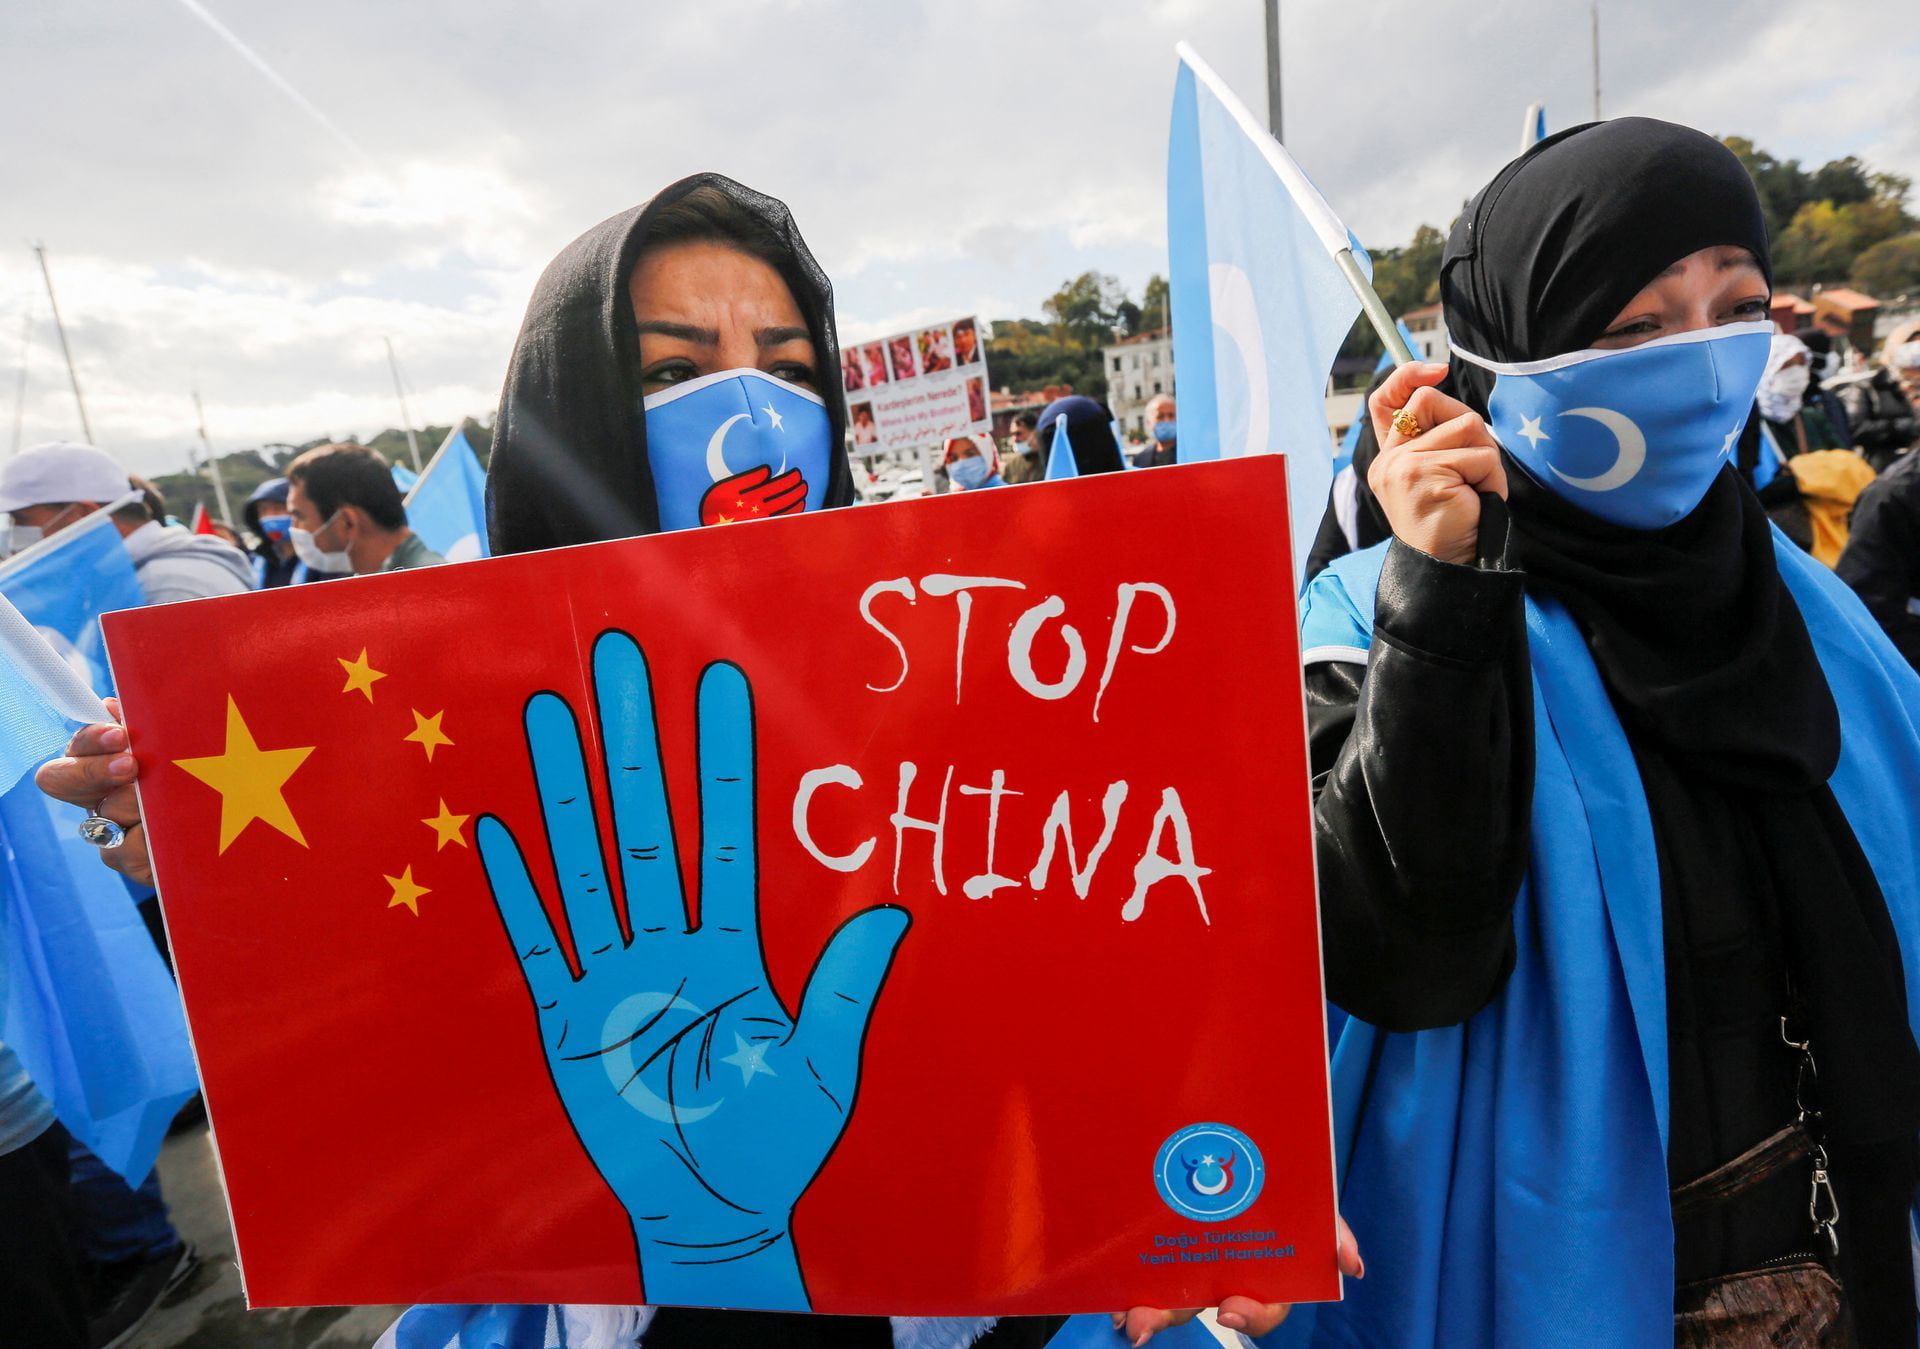 protest against Uyghur genocide